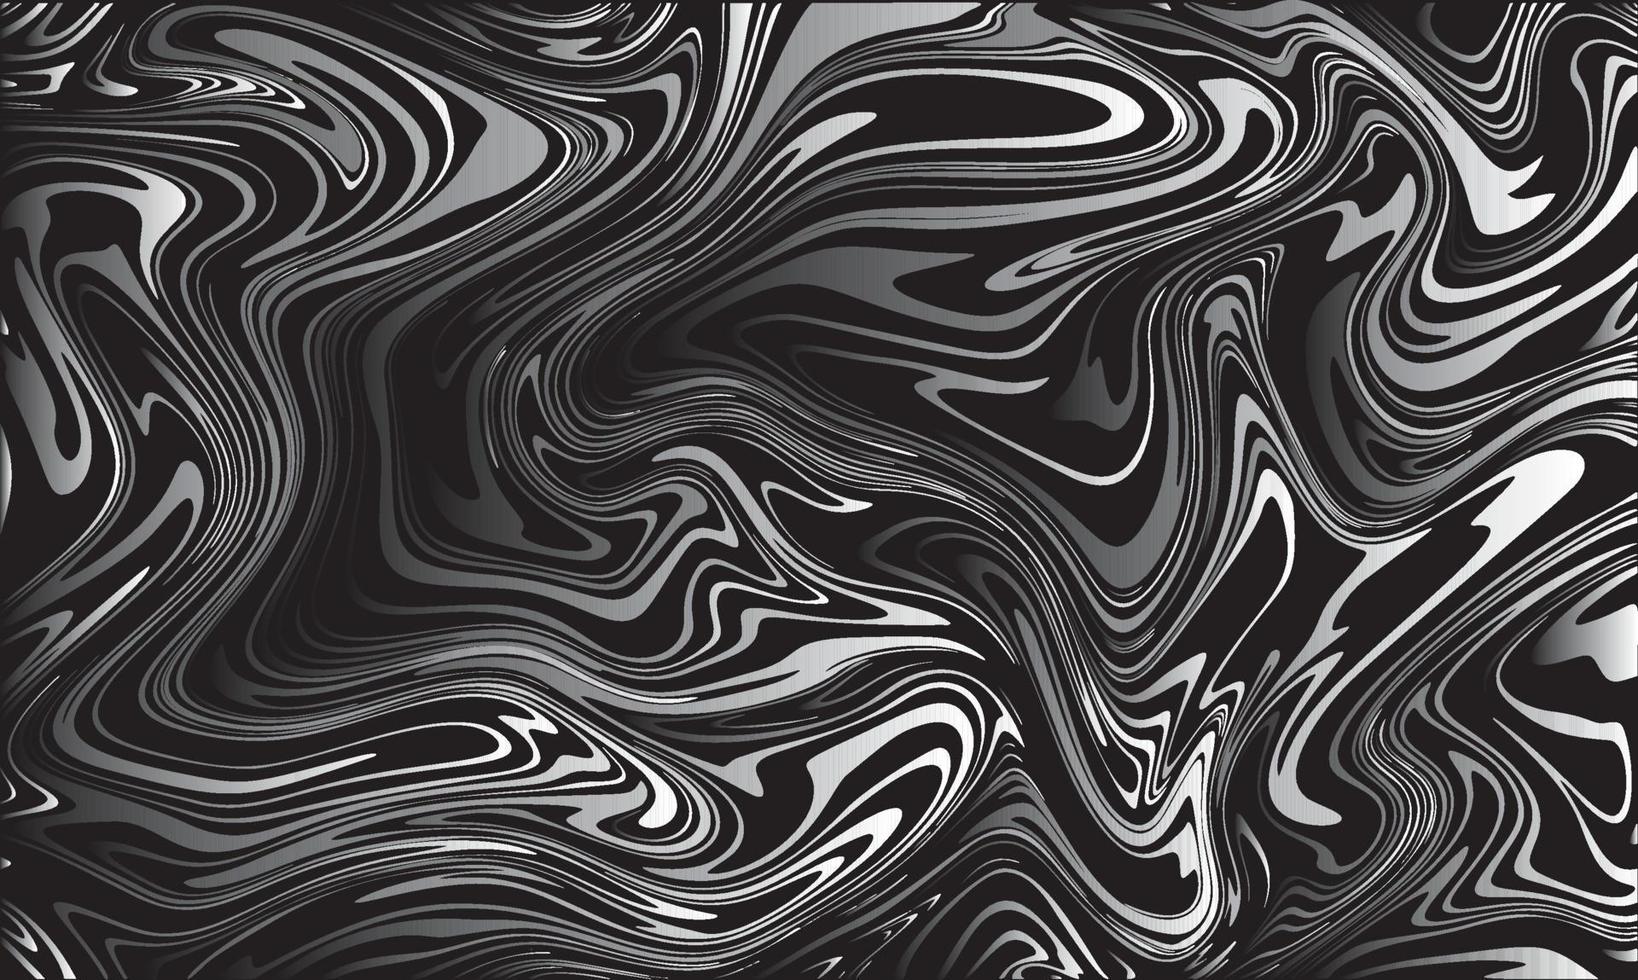 vektor abstrakt marmor textur flytande konst zebra effekt svart och vit färg